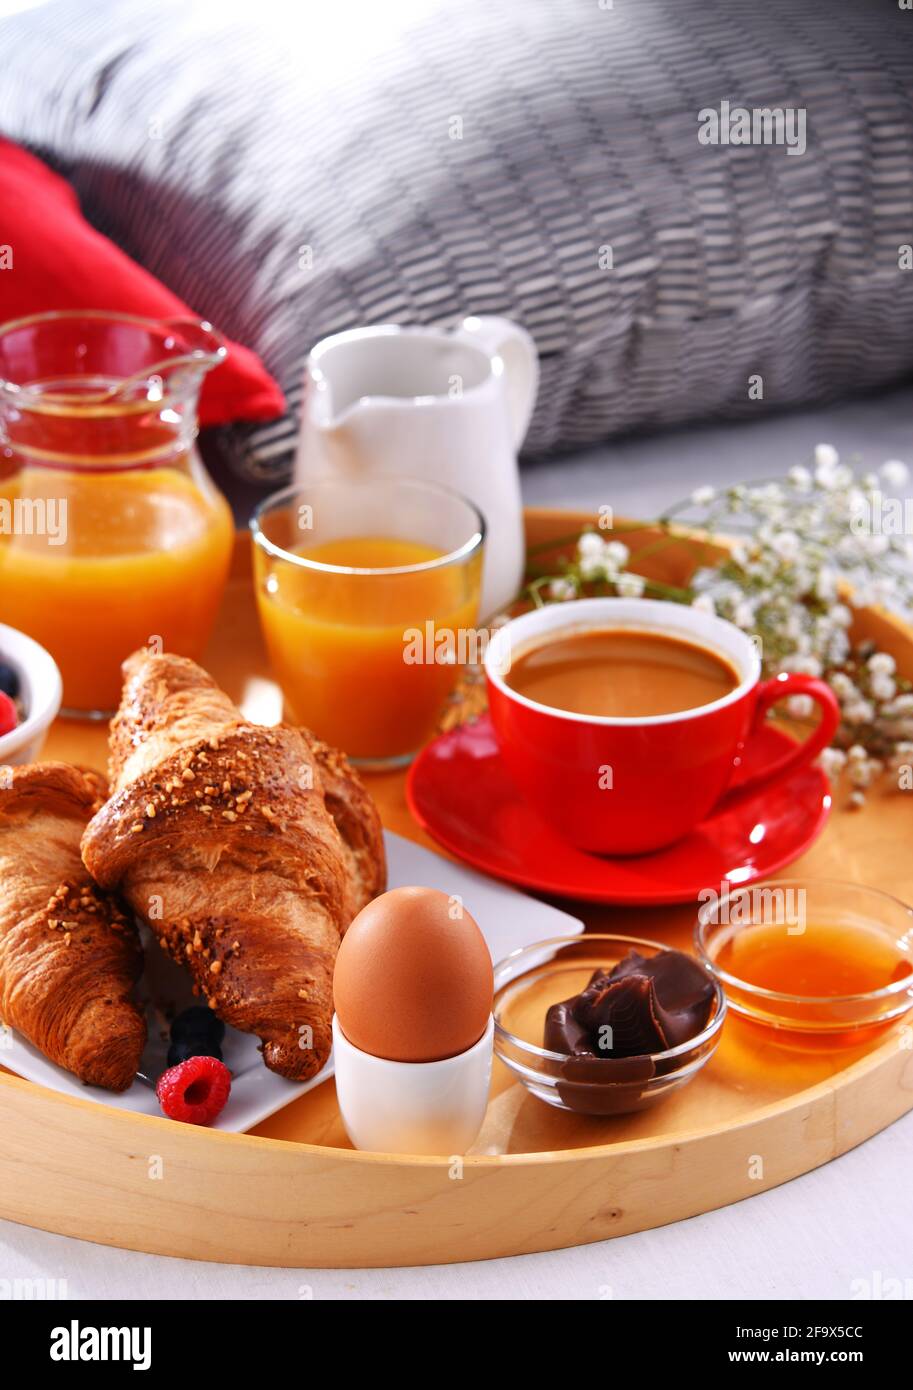 Ein Tablett mit Frühstück auf einem Bett in einem Hotelzimmer  Stockfotografie - Alamy